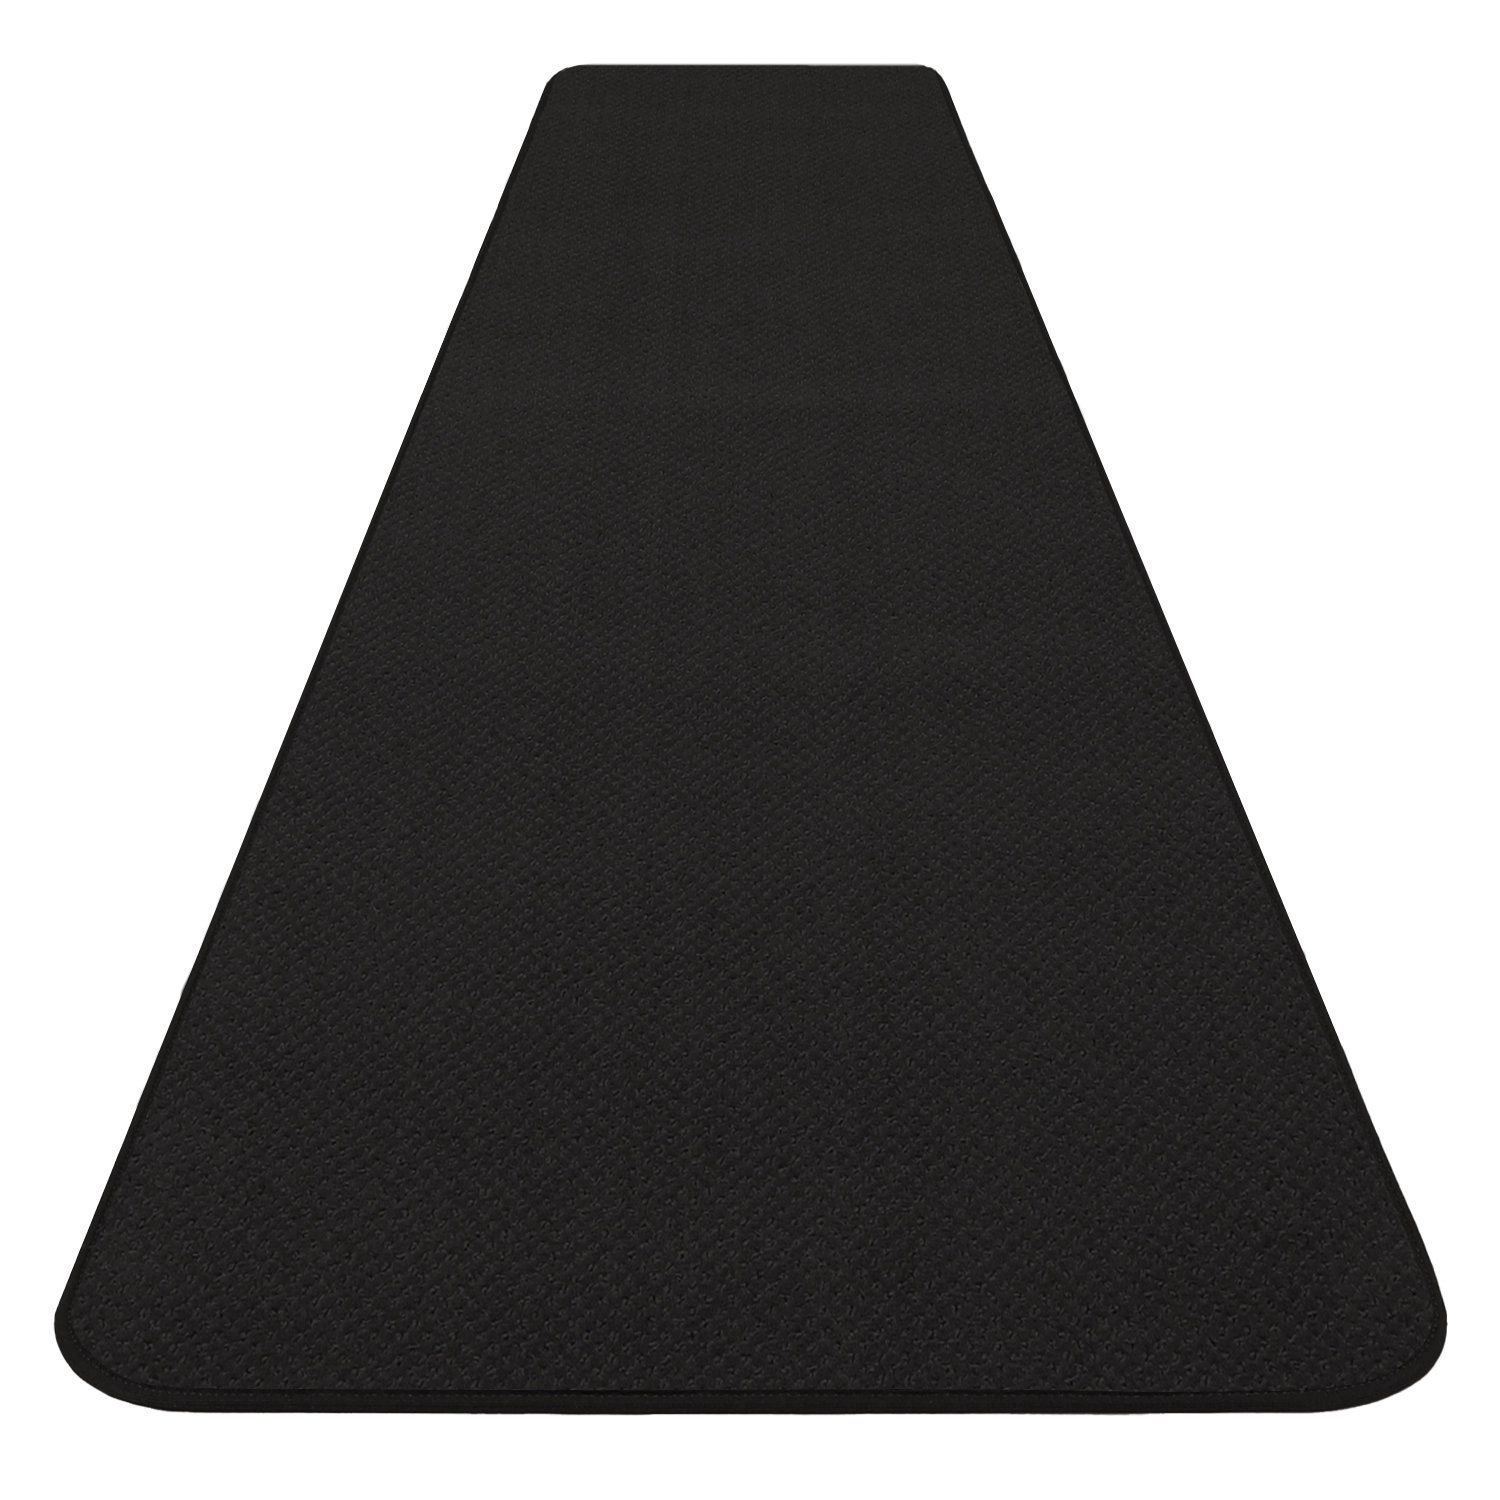 https://assets.wfcdn.com/im/43556361/compr-r85/2311/231160651/skid-resistant-carpet-runner-black.jpg